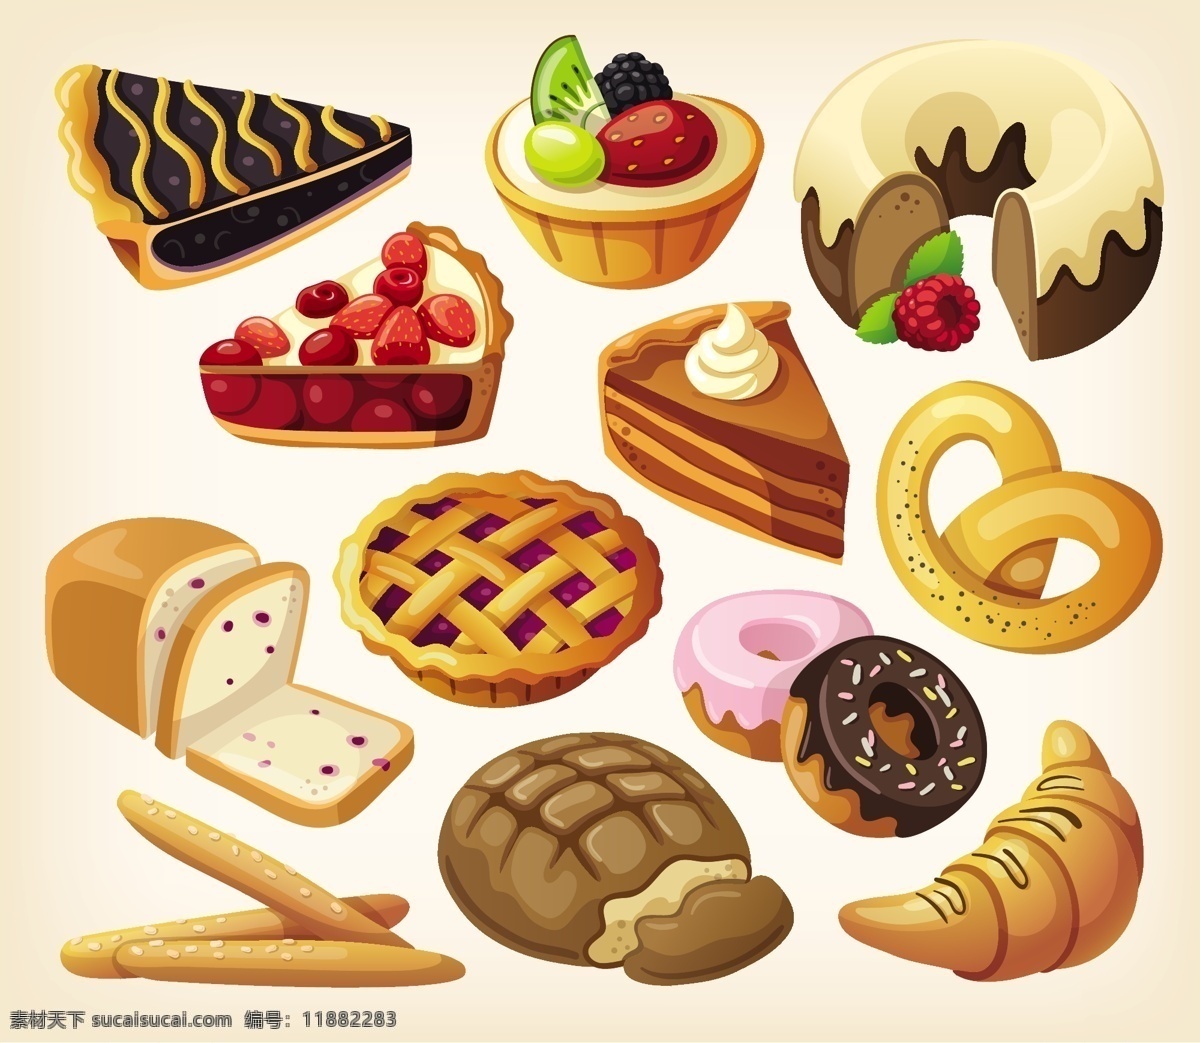 美味 卡通 甜点 糕点 矢量 蛋糕 面包 奶油蛋糕 矢量图 水果蛋糕 甜甜圈 蓝莓派 牛角面包 法式面包 其他矢量图